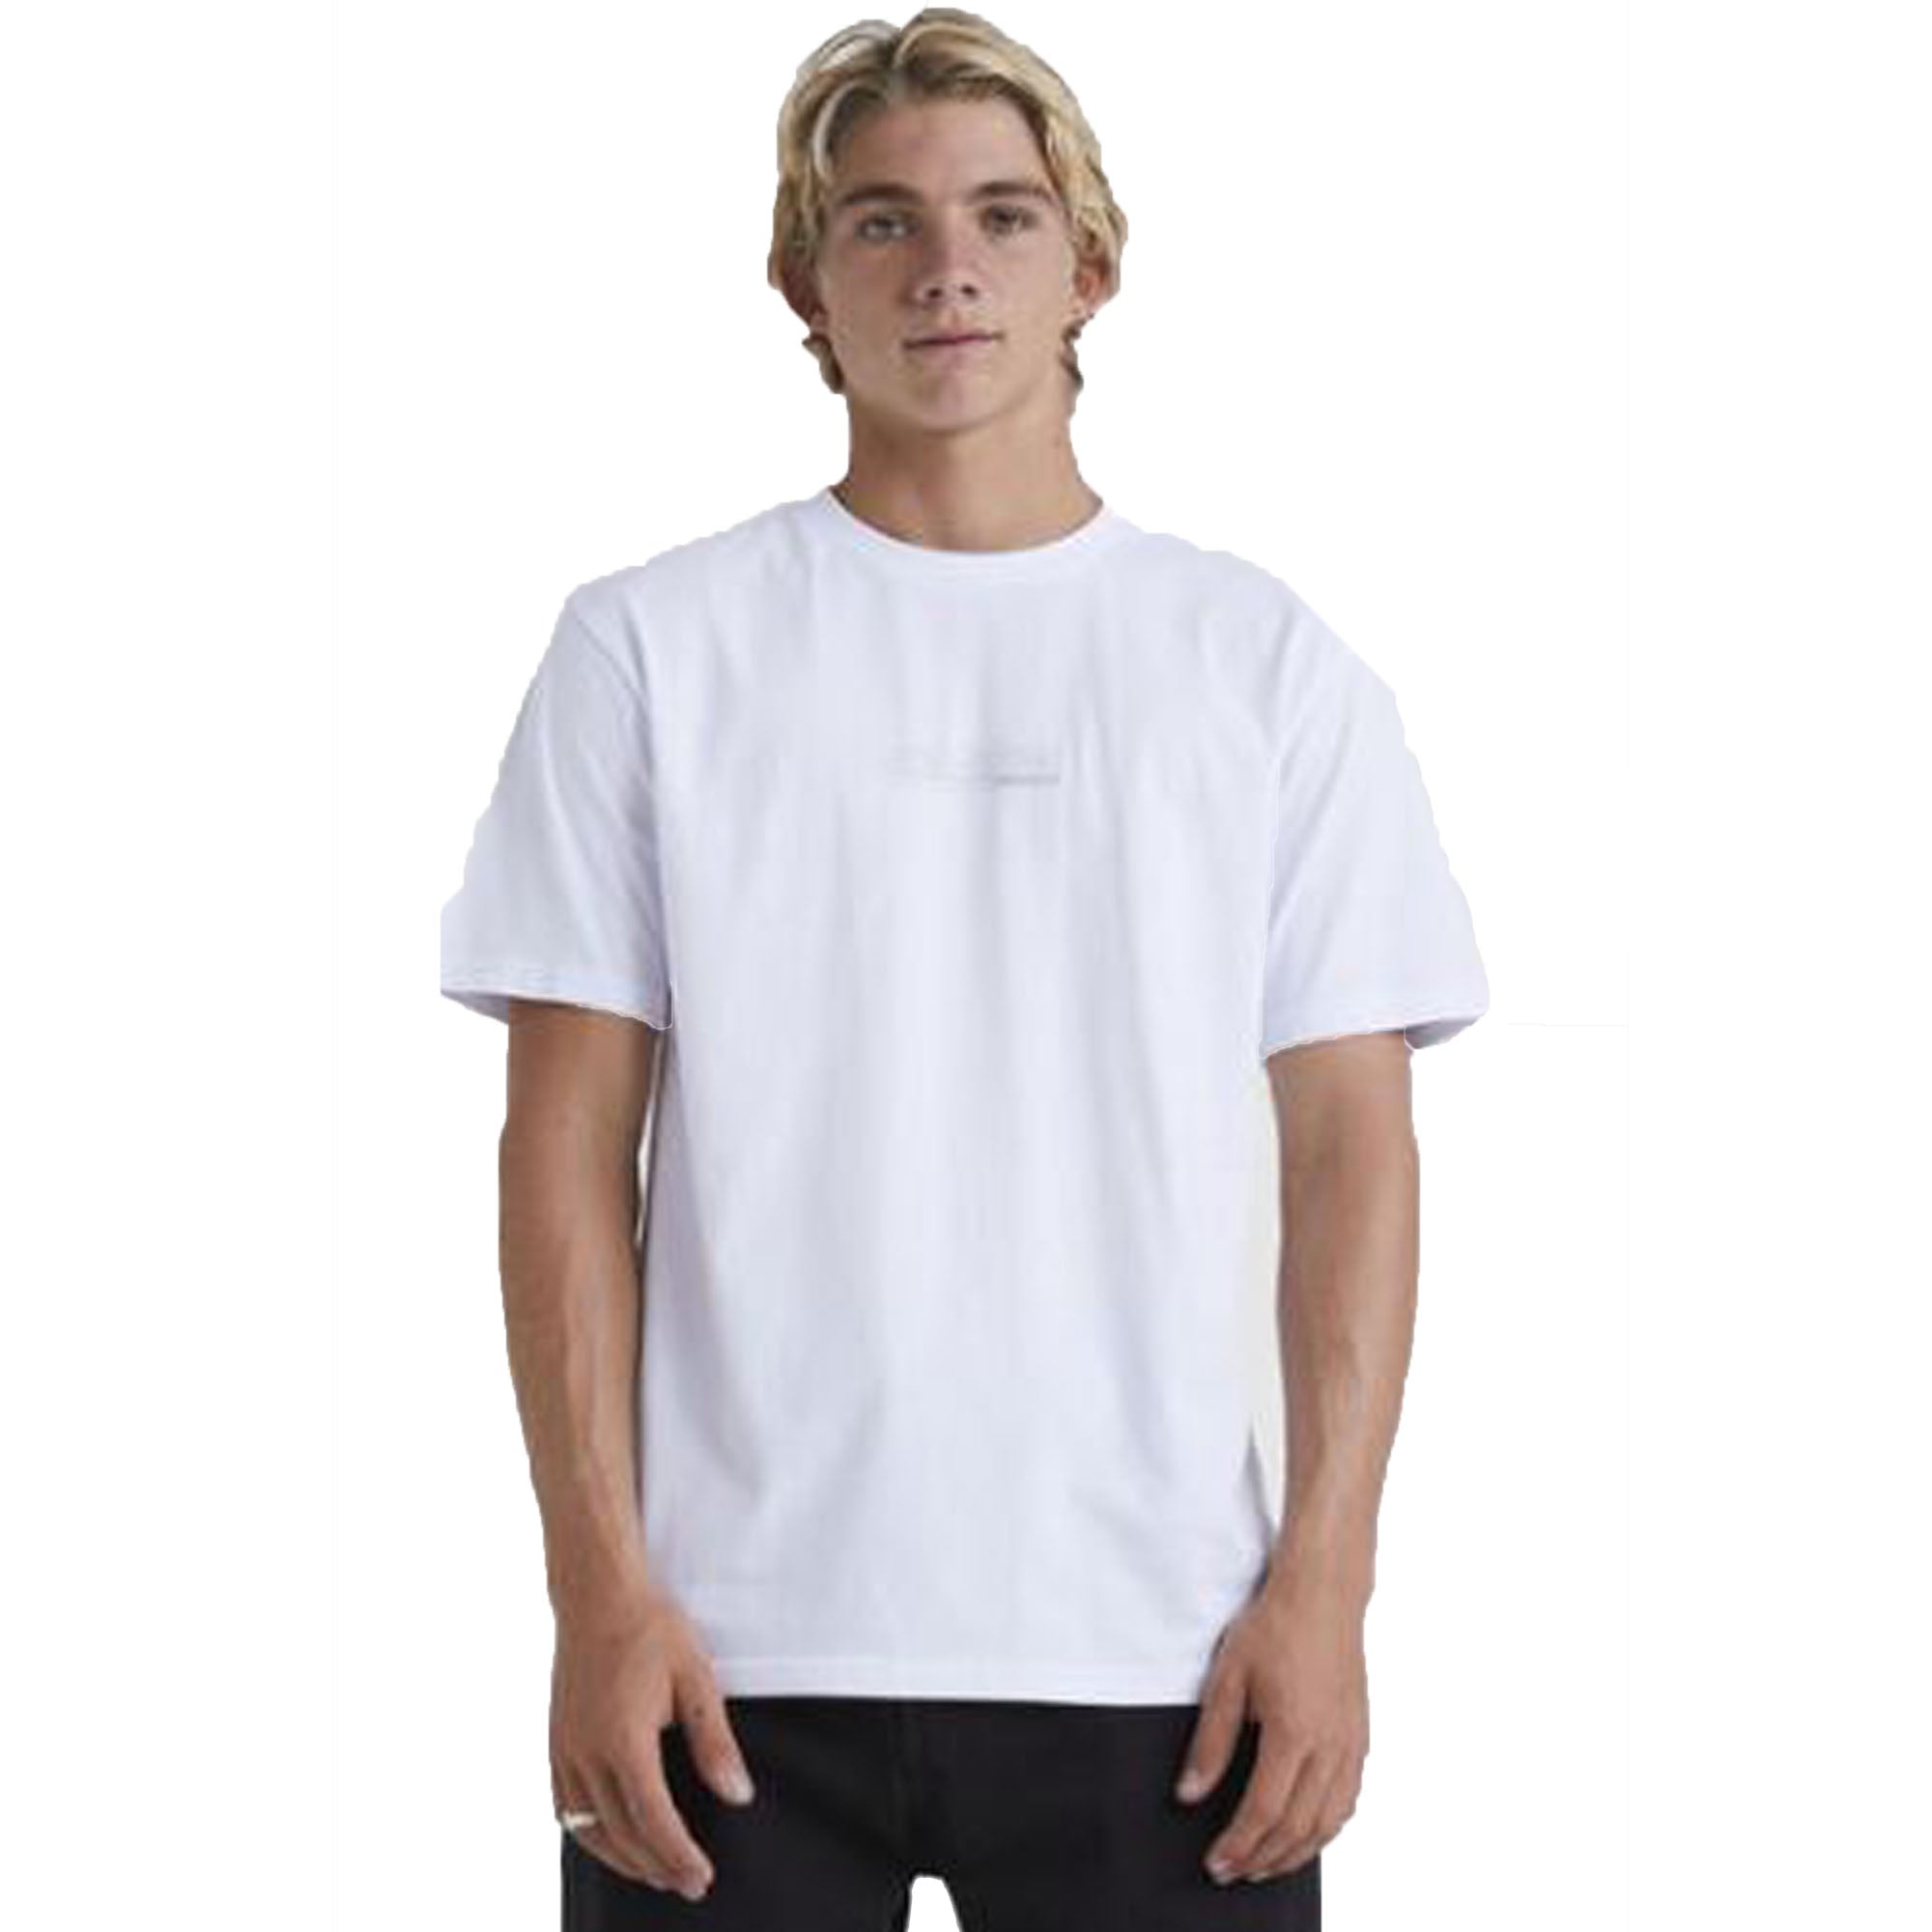 Quiksilver Decal Men's S/S T-Shirt